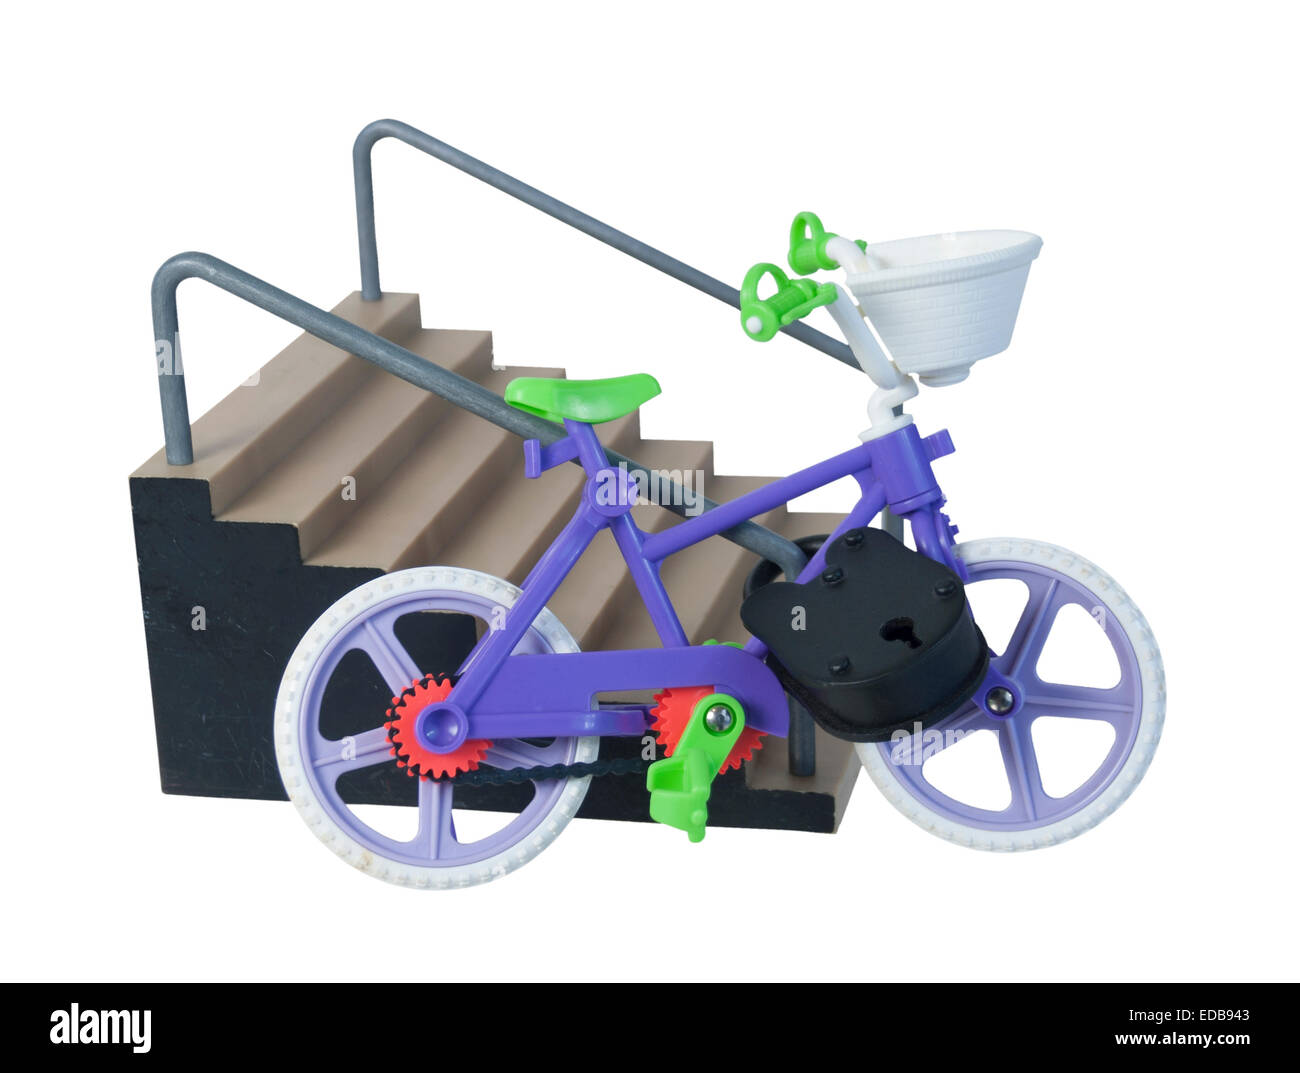 Fahrrad-Padlocked Treppe Handlauf für Sicherheit - Pfad enthalten Stockfoto